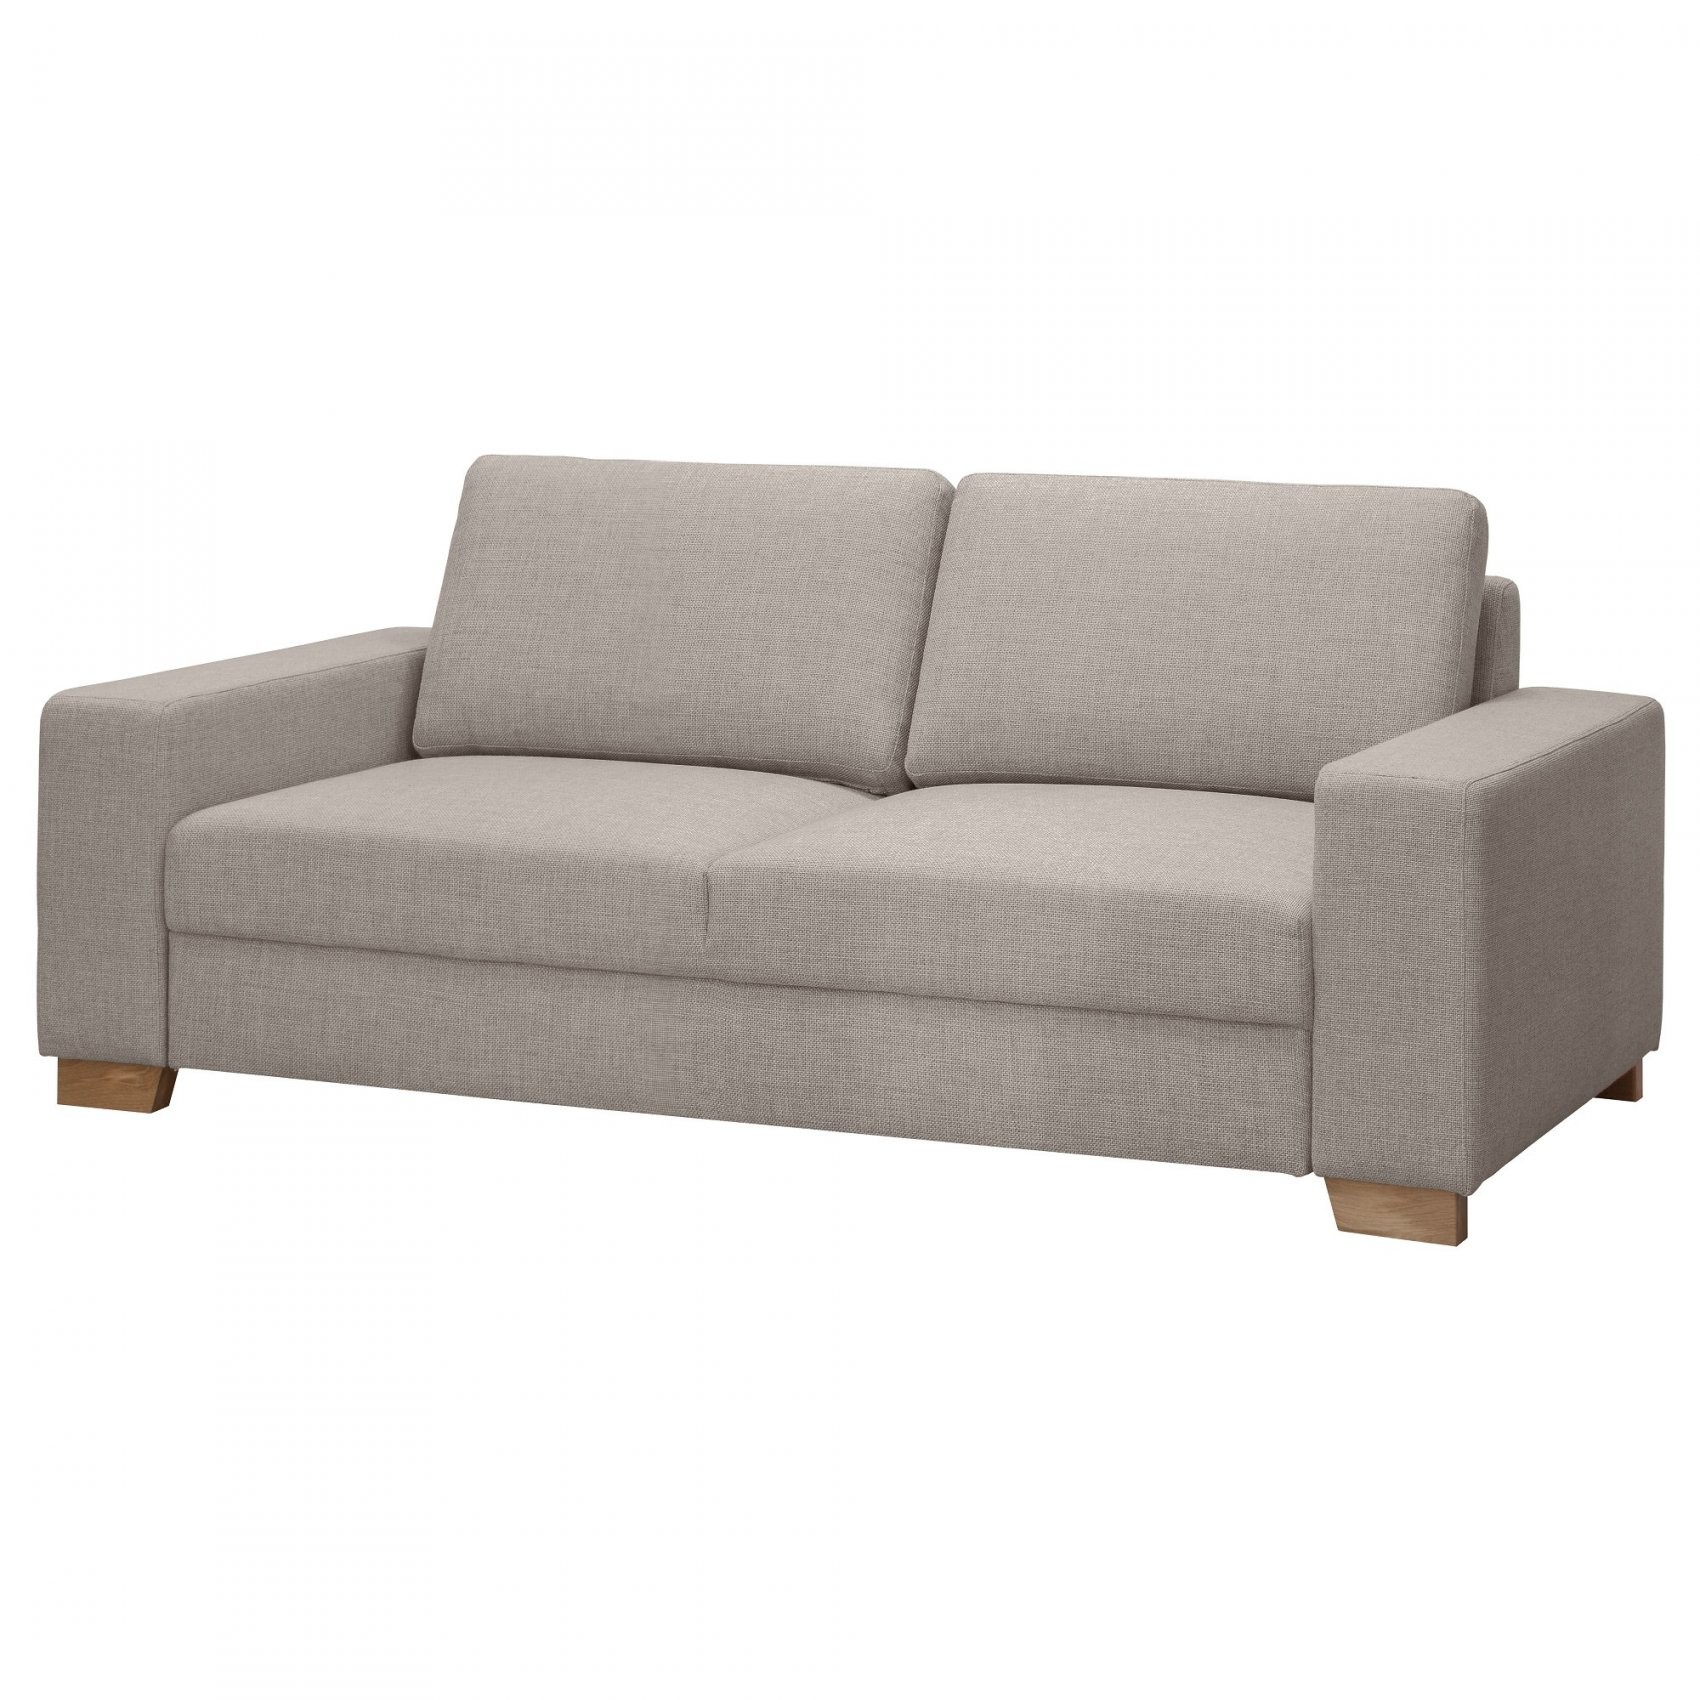 Zweisitzer Sofa Zum Ausziehen Luxus 2Sitzer Sofa Mit Excellent Super von 2 Sitzer Sofa Zum Ausziehen Photo